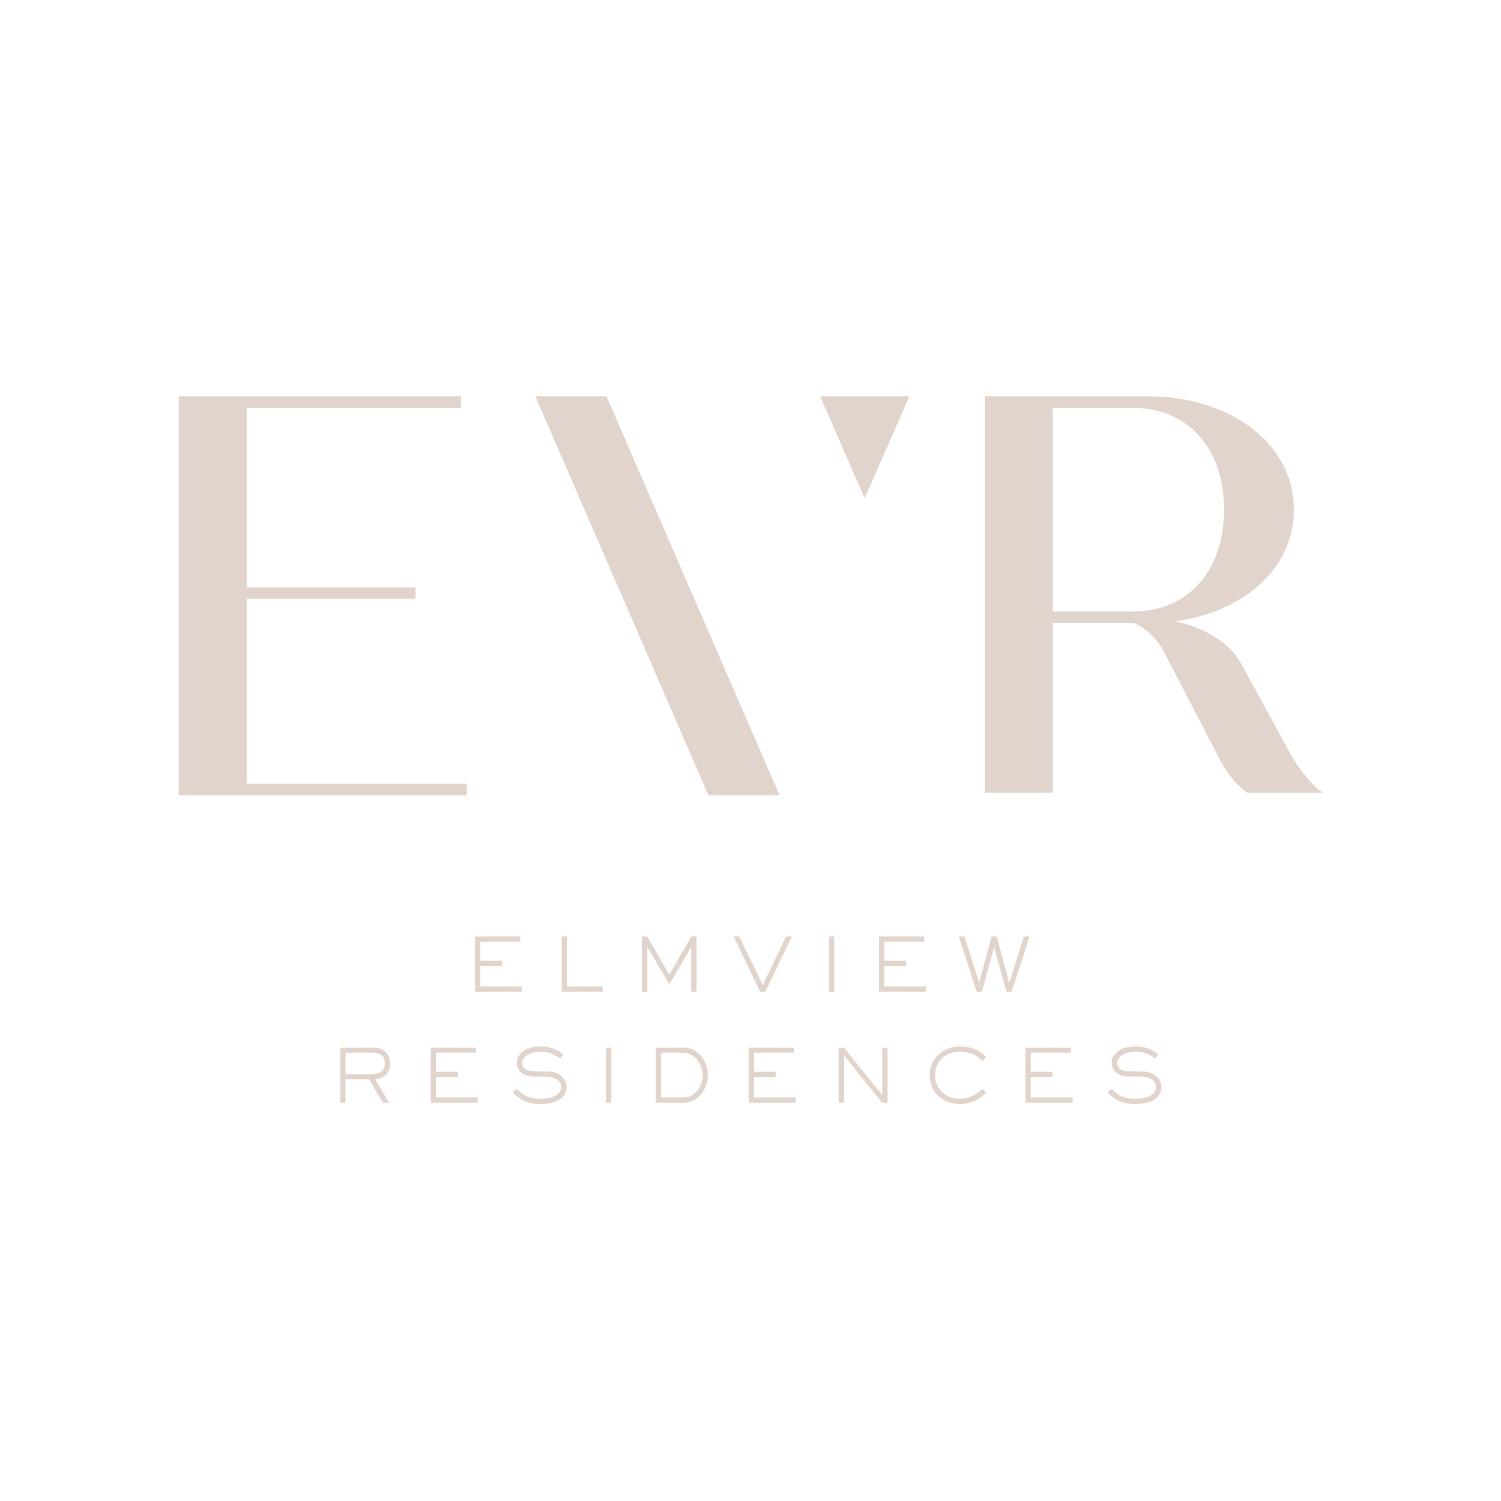 The Elmview Residences